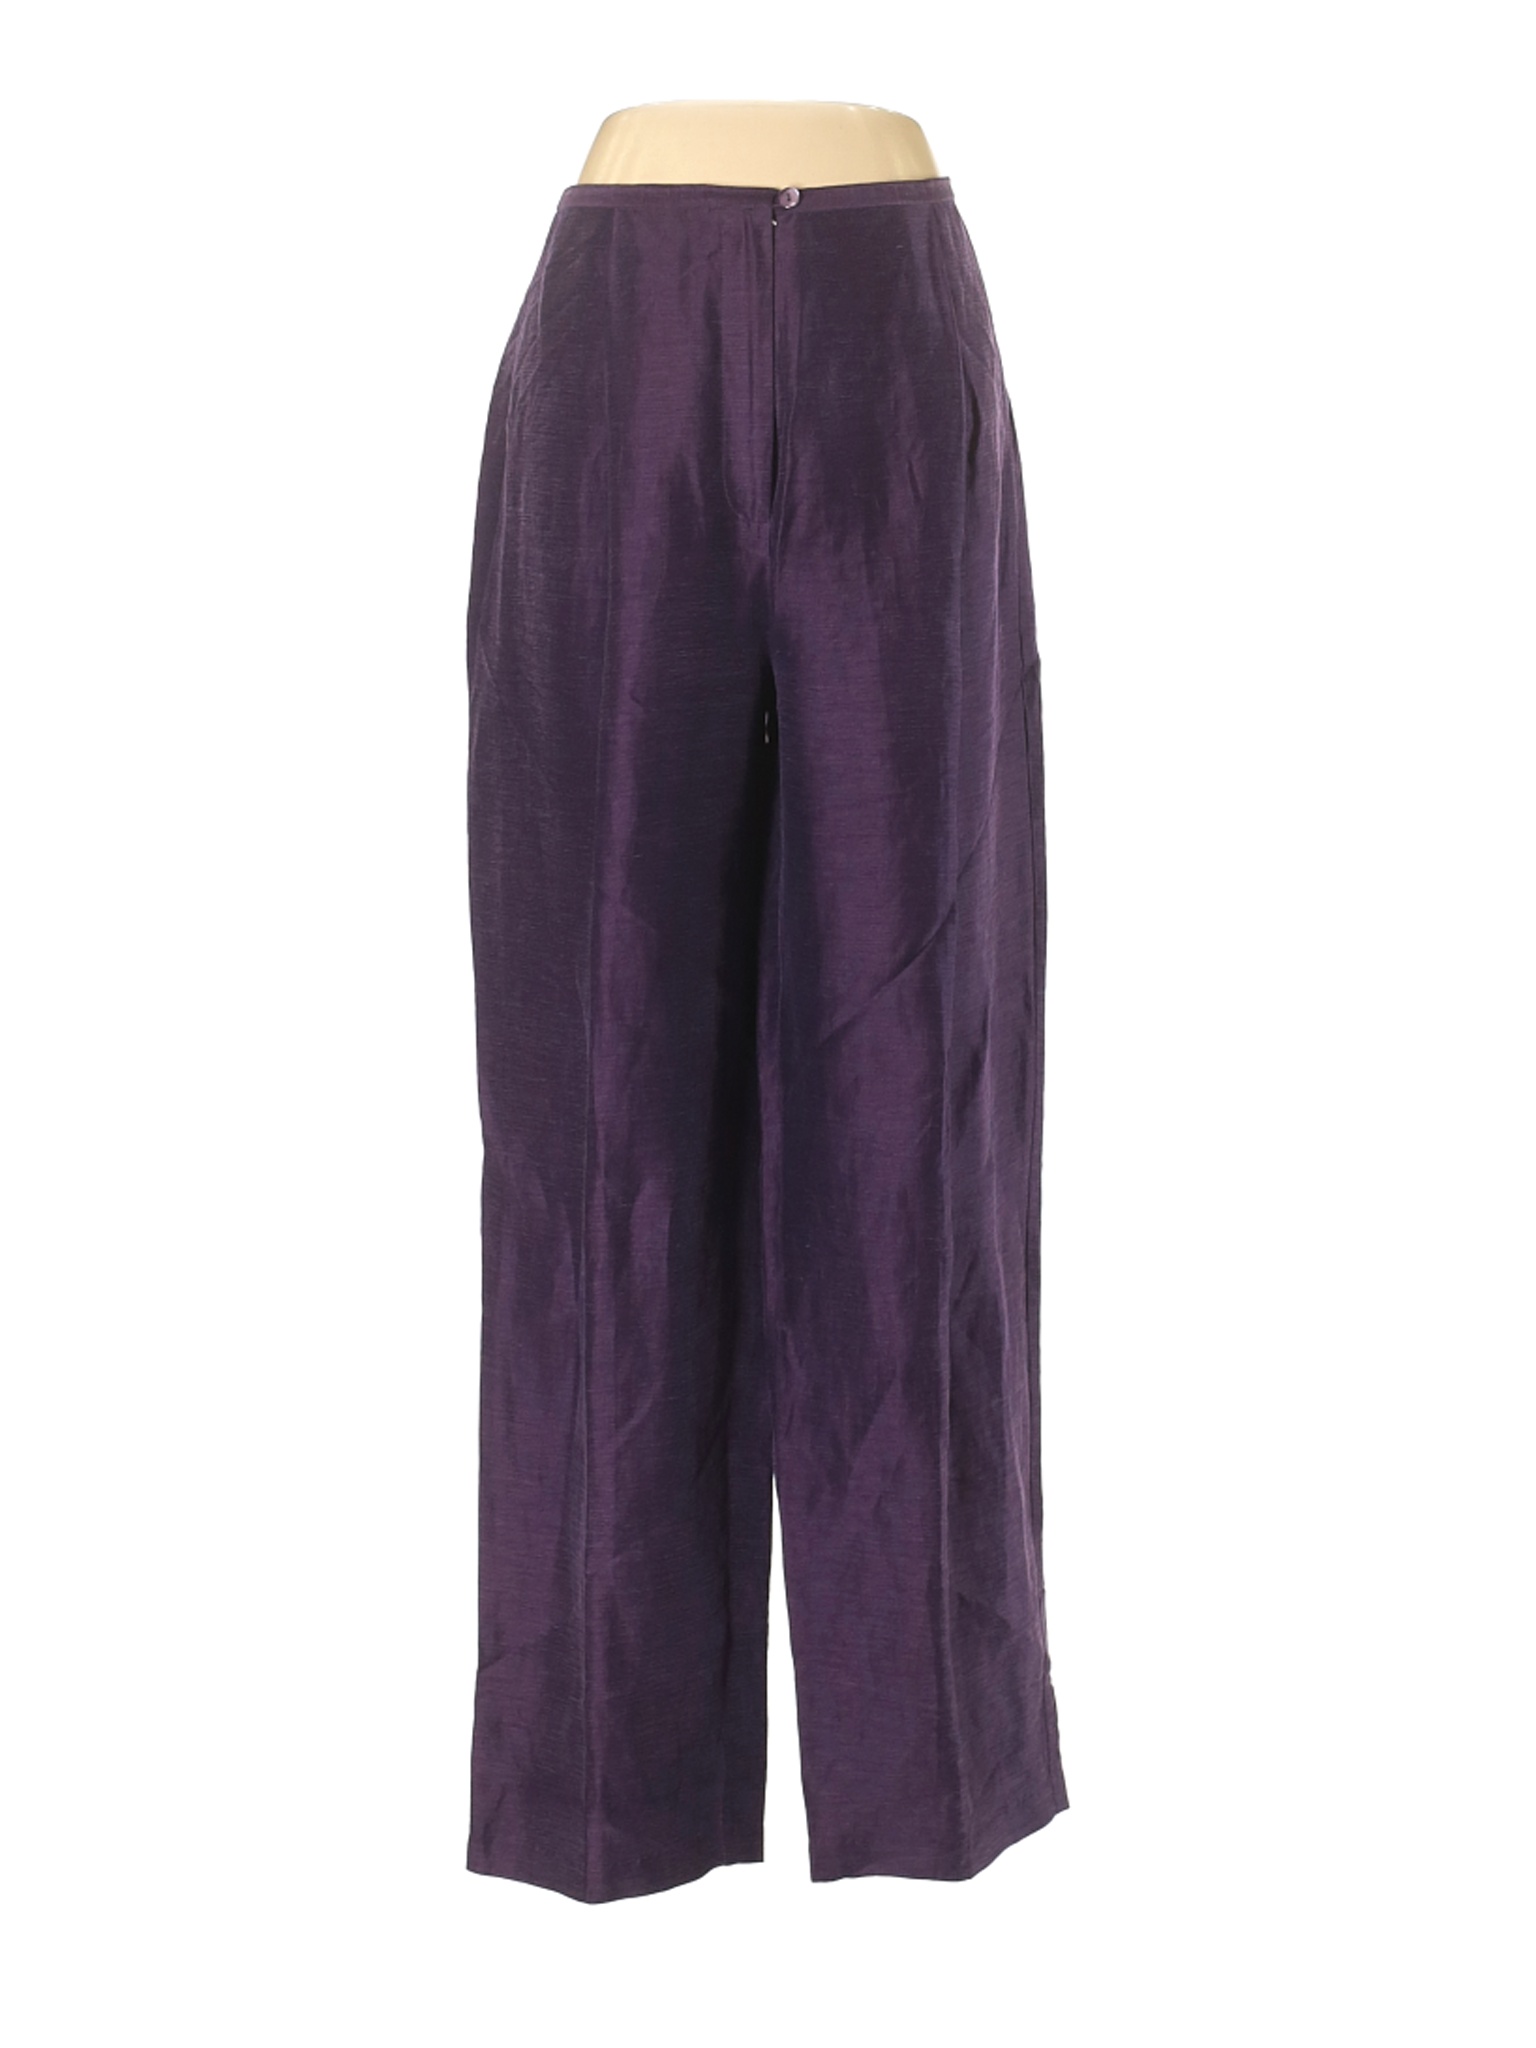 Eileen Fisher Women Purple Linen Pants S | eBay